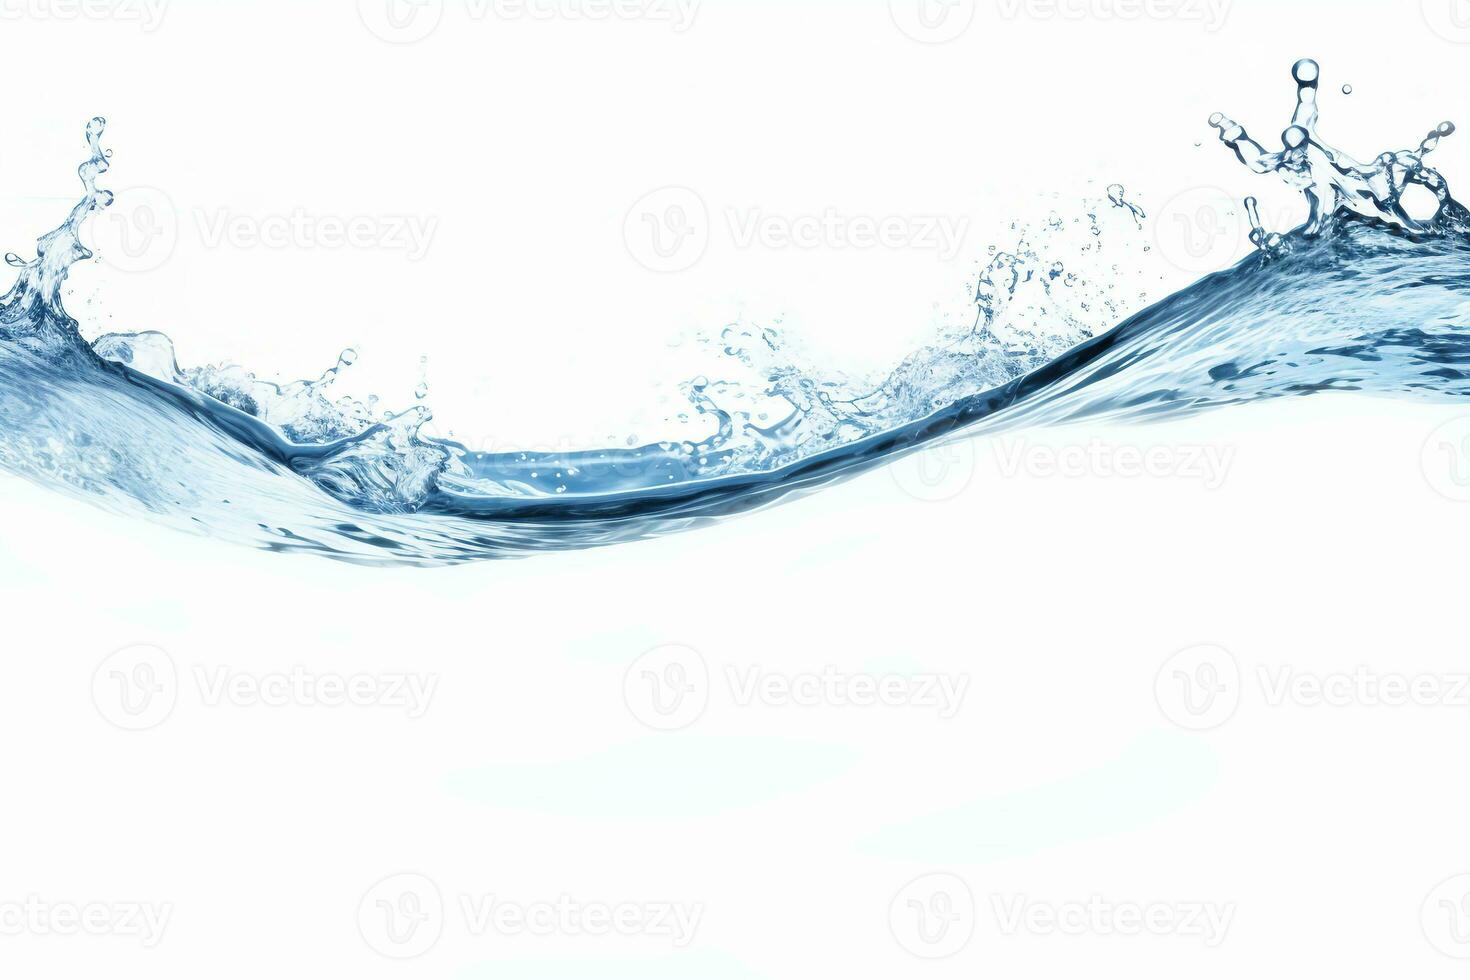 azul água respingo isolado em branco fundo, azul água respingo aceno, água gotas e coroa a partir de respingo do água foto